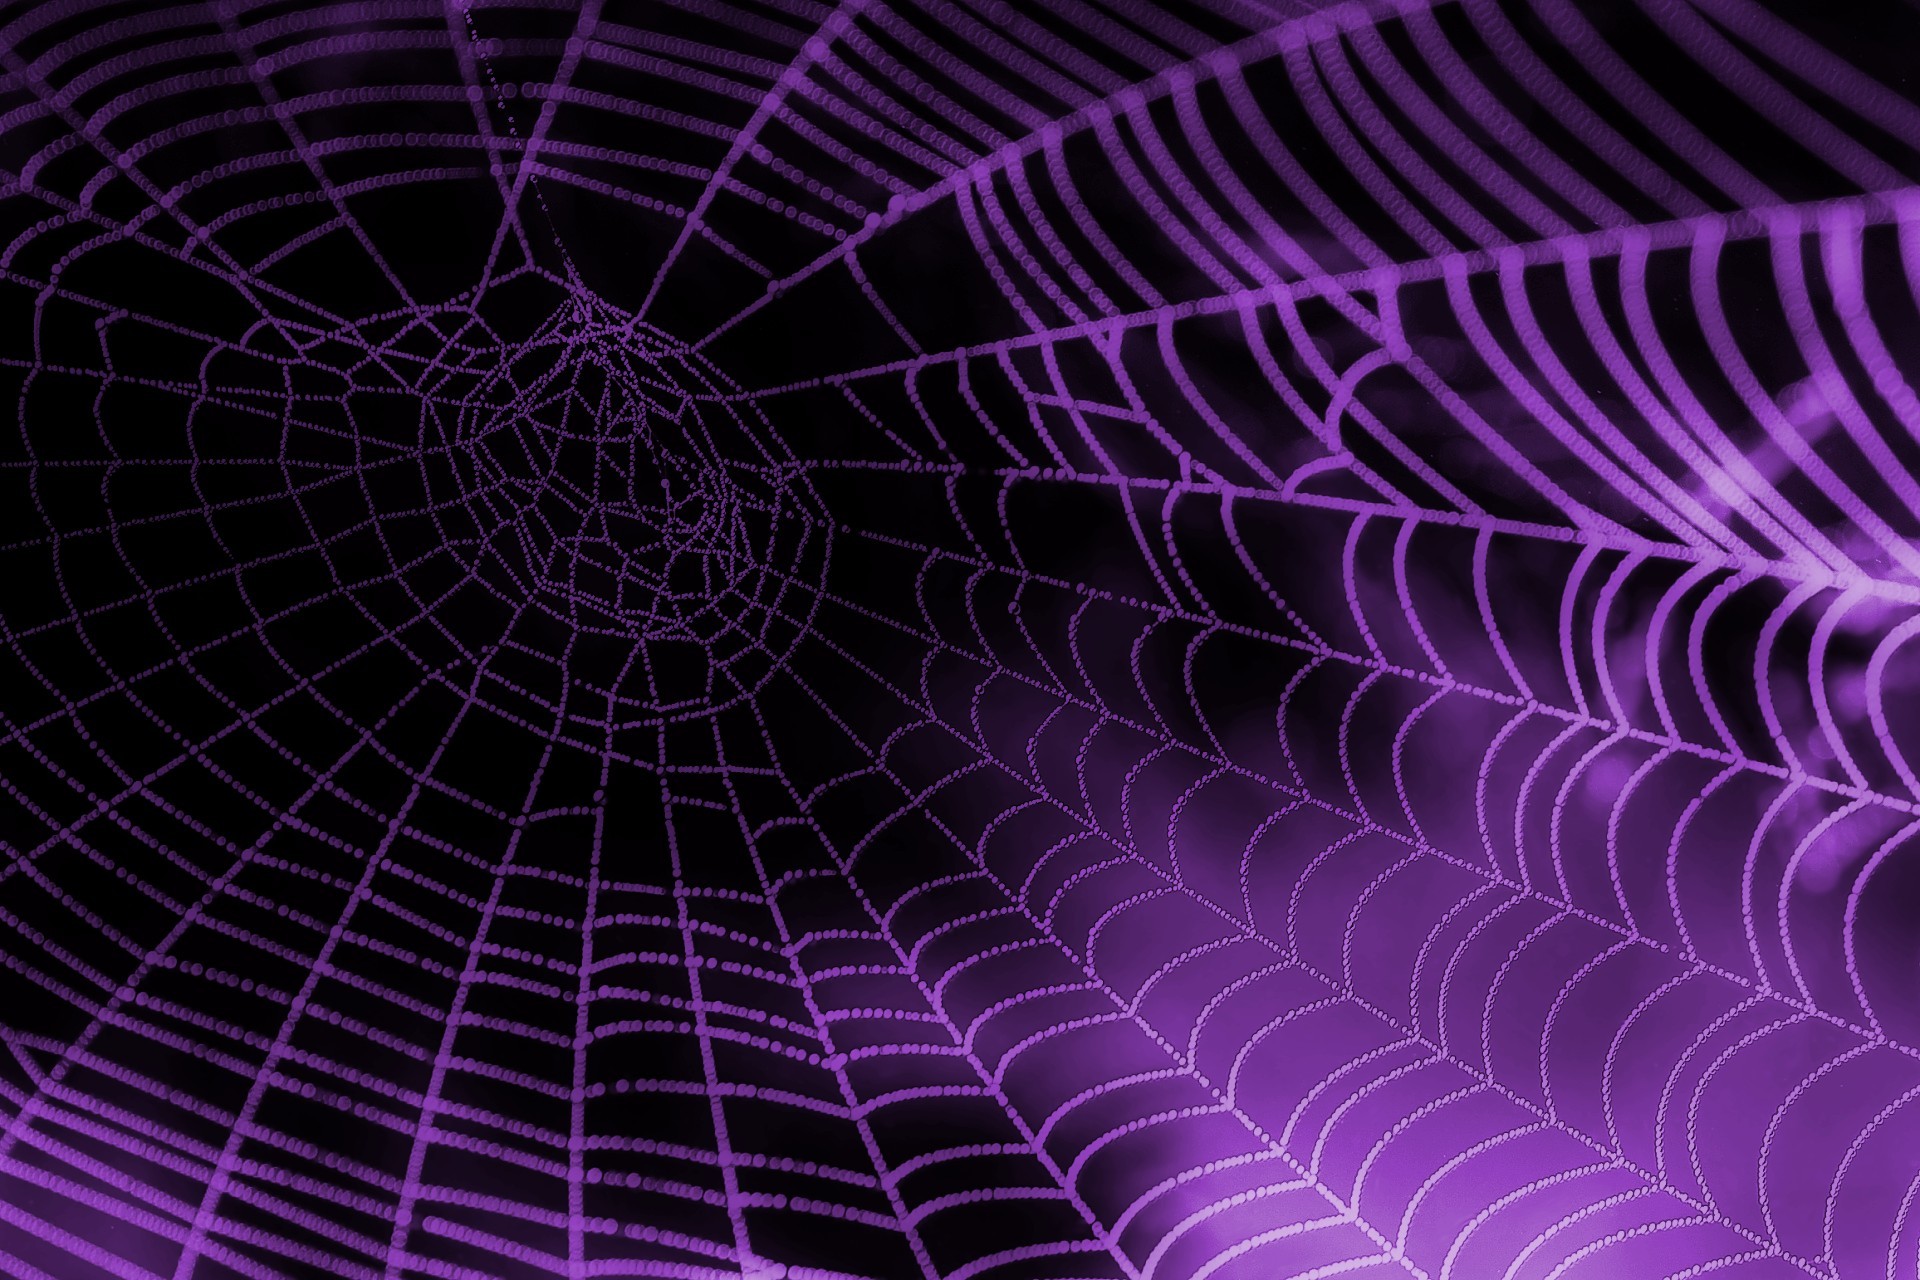 spider web wallpaper,purple,violet,light,spider web,pink